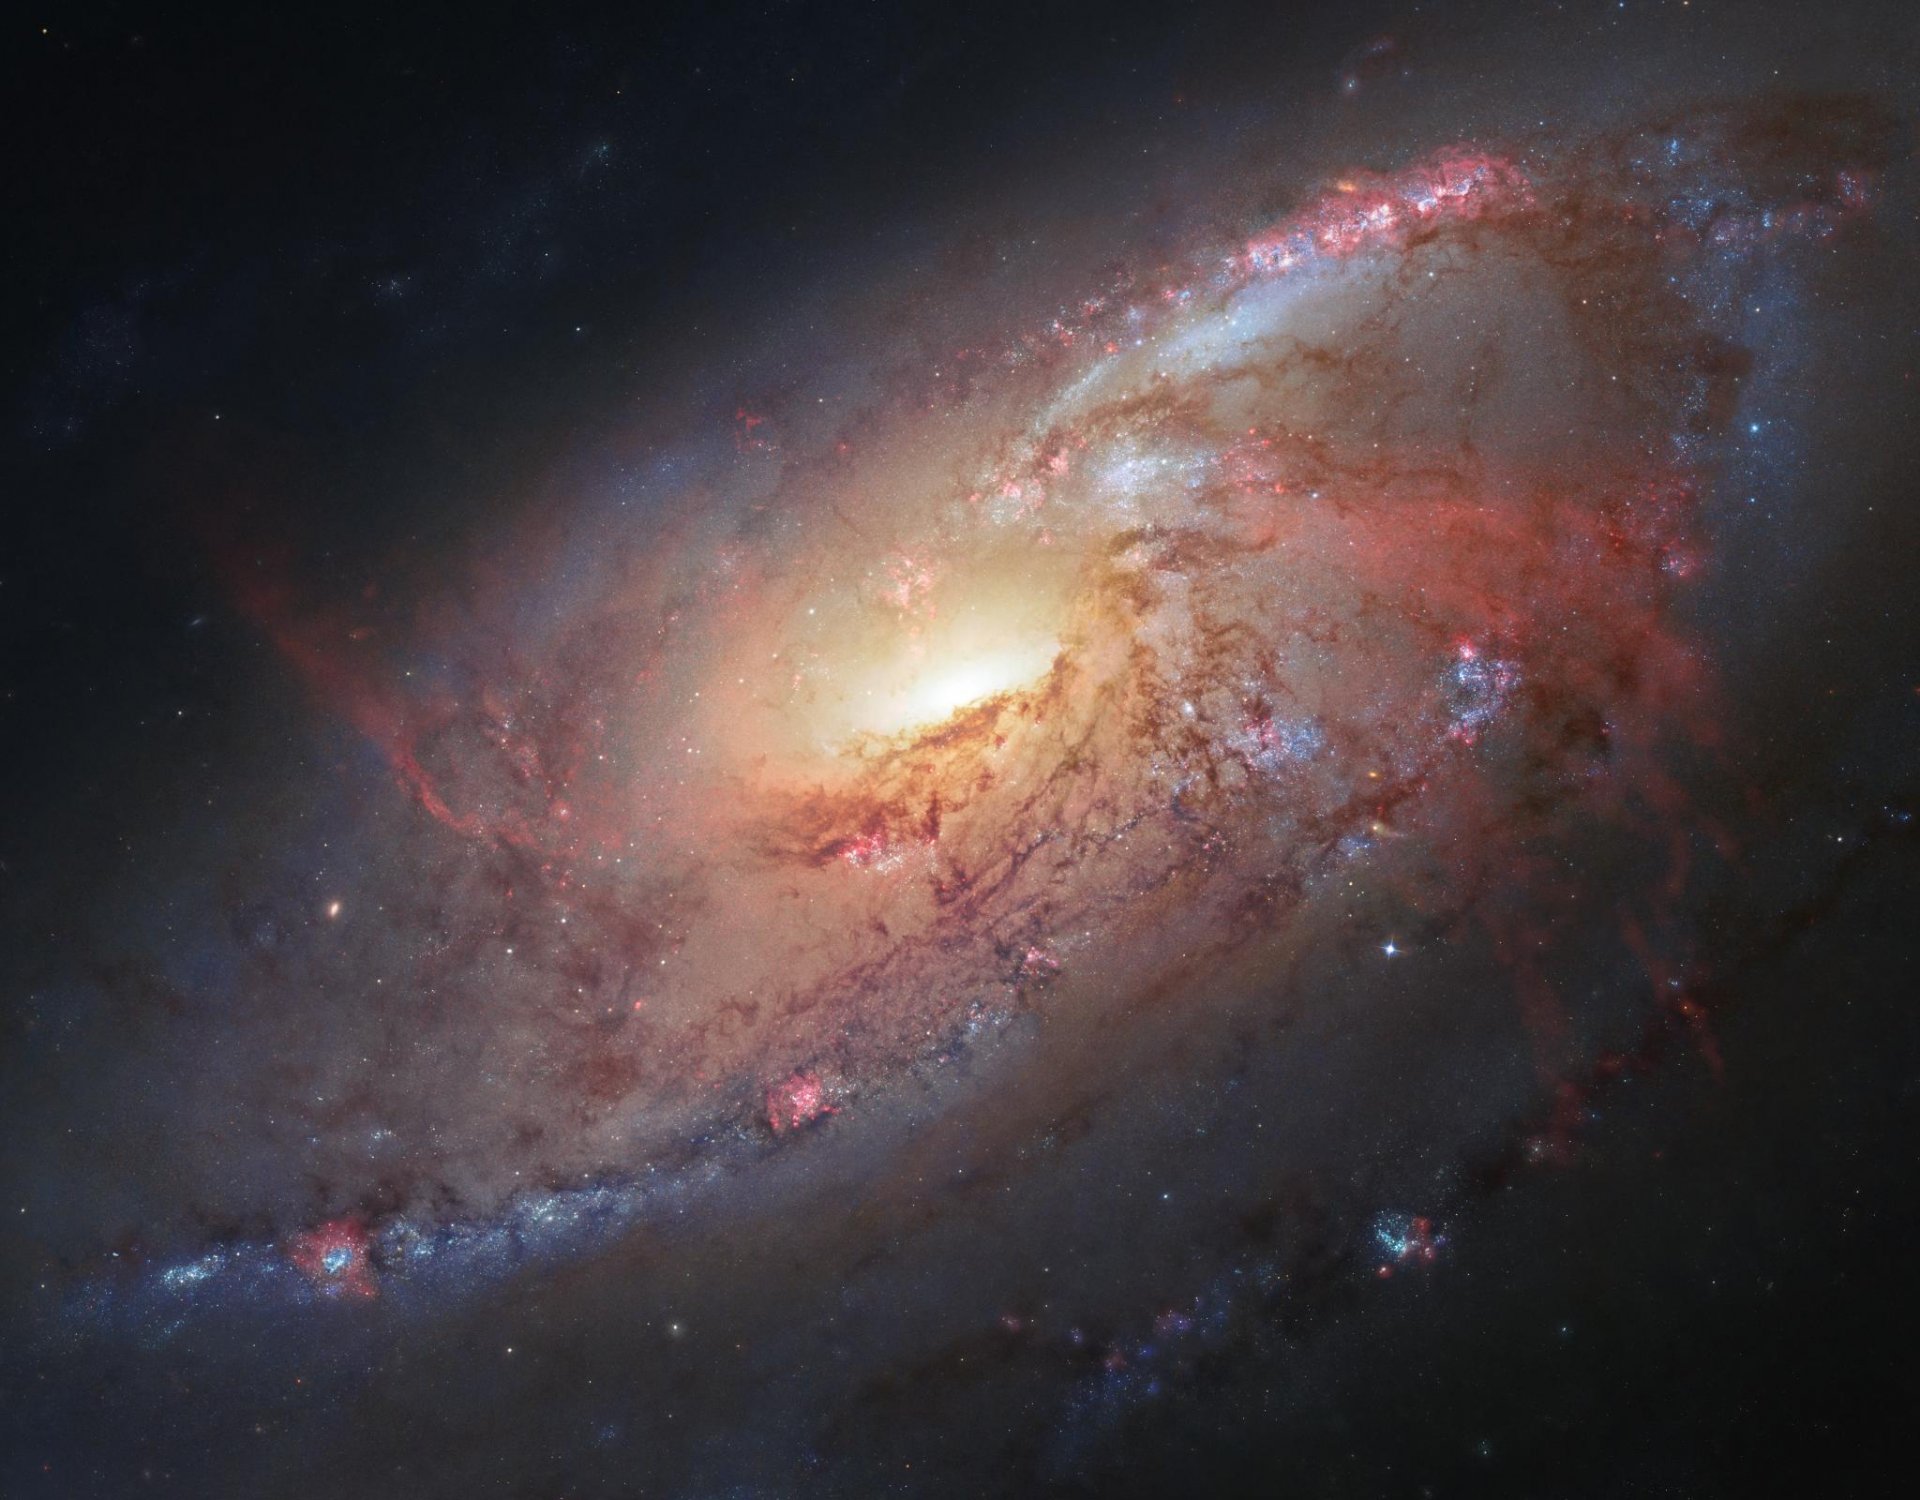 космос спиральная галактика м106 звезды космического телескопа хаббла наса goddard space flight center